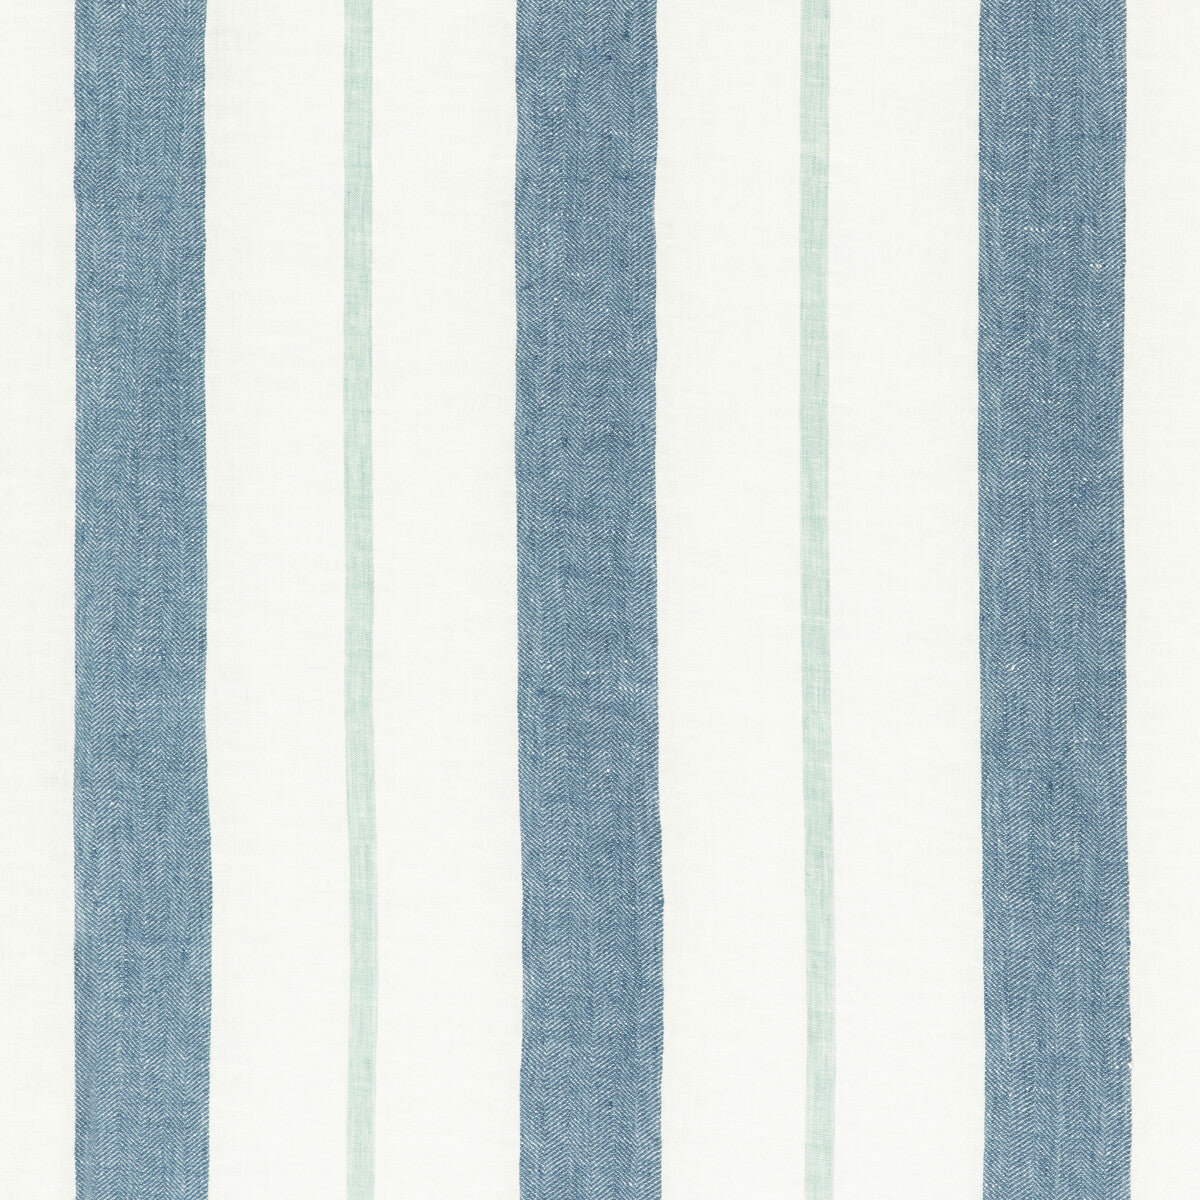 Kravet Design fabric in 4845-515 color - pattern 4845.515.0 - by Kravet Design